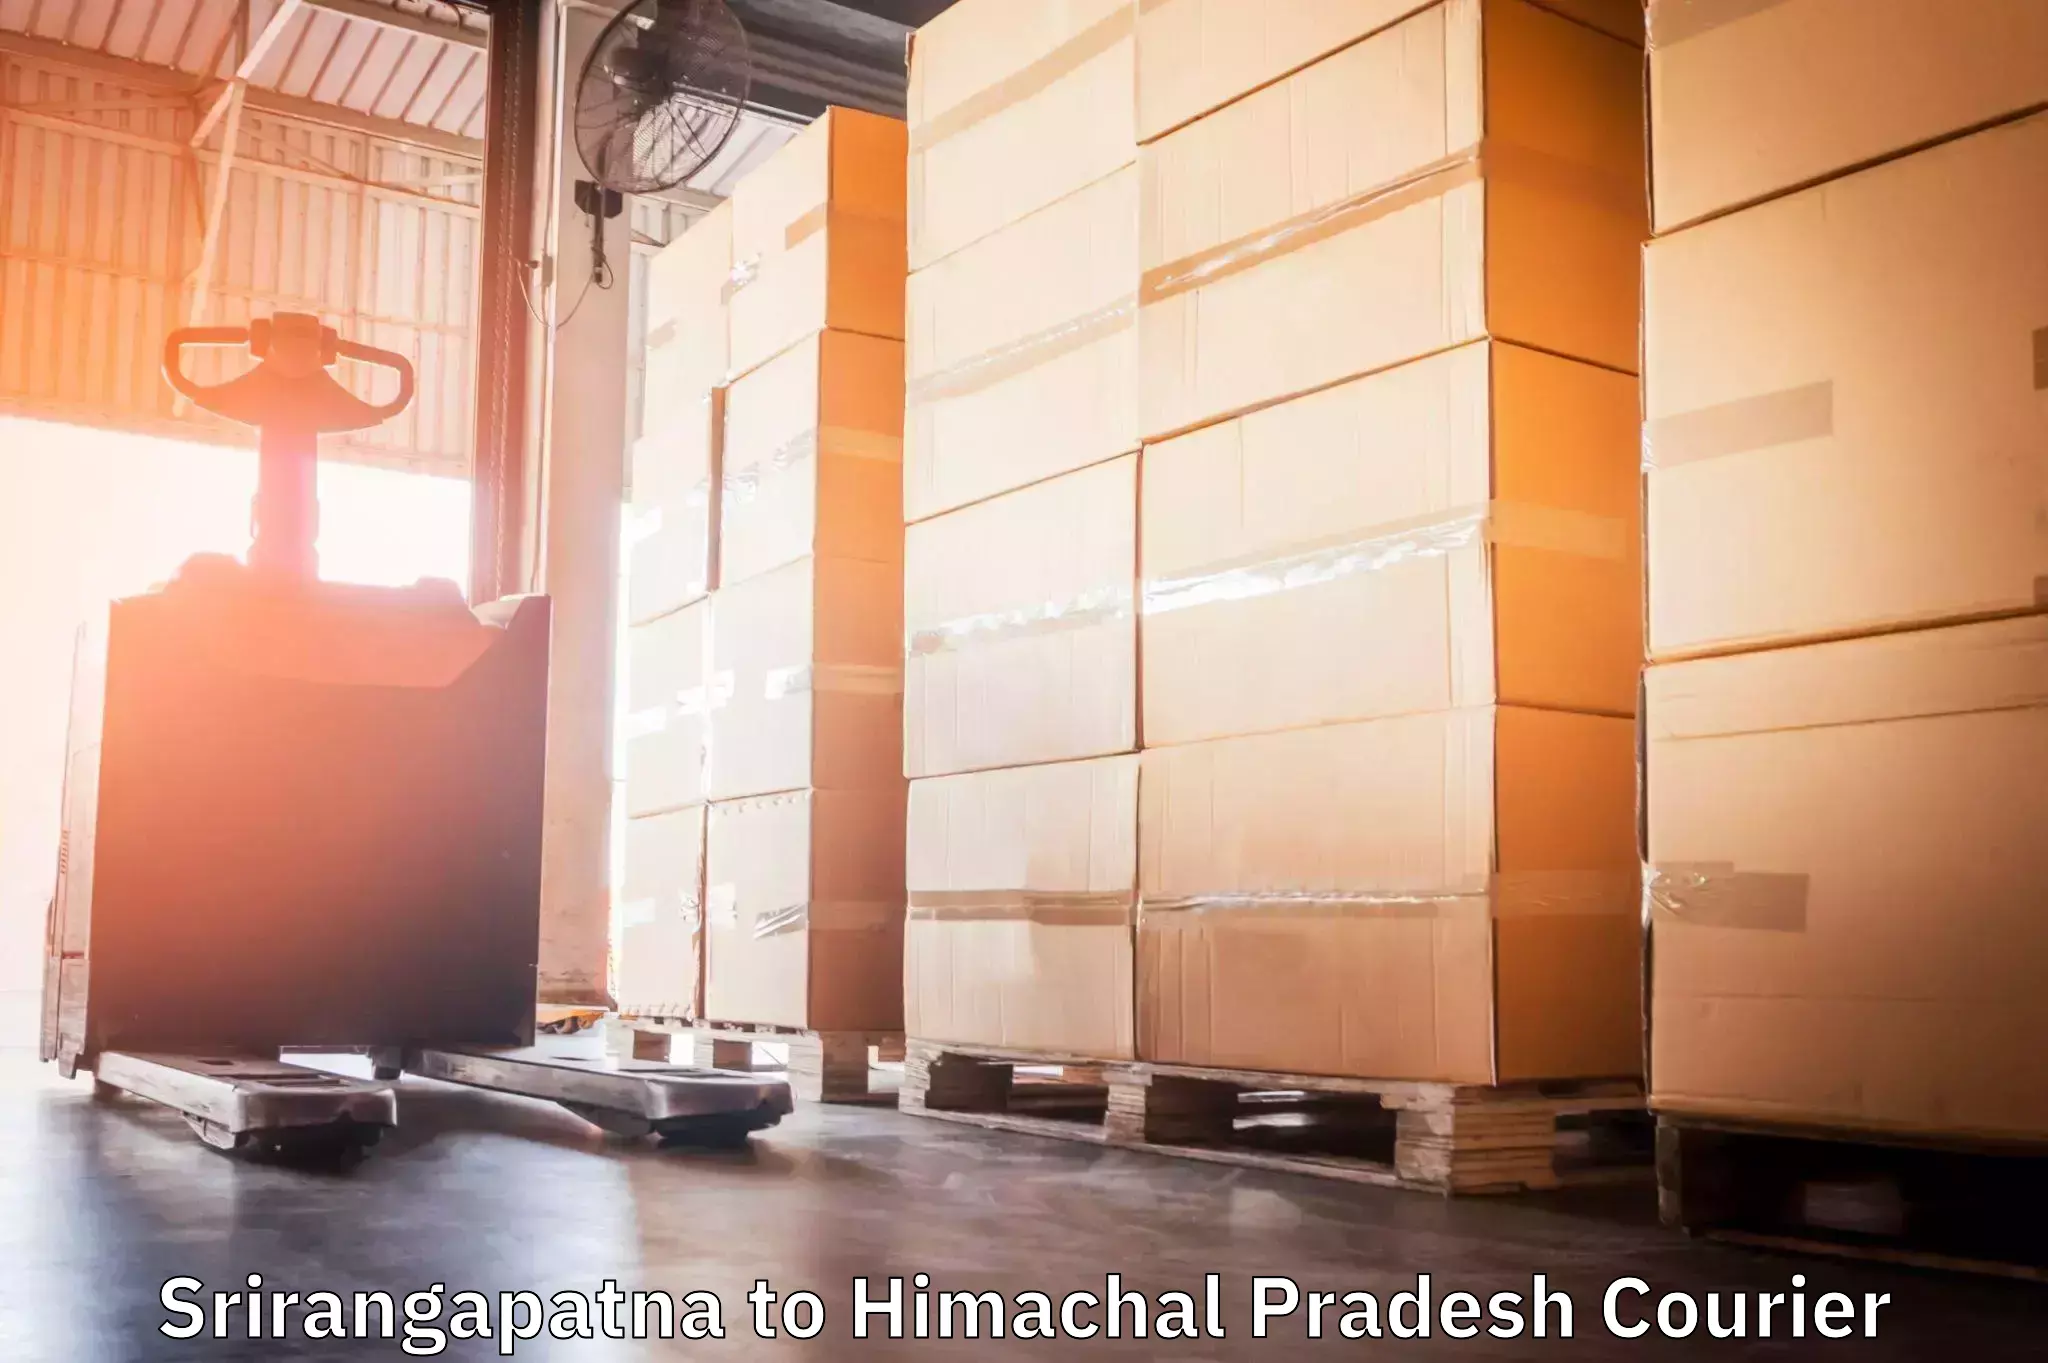 Efficient order fulfillment Srirangapatna to Una Himachal Pradesh